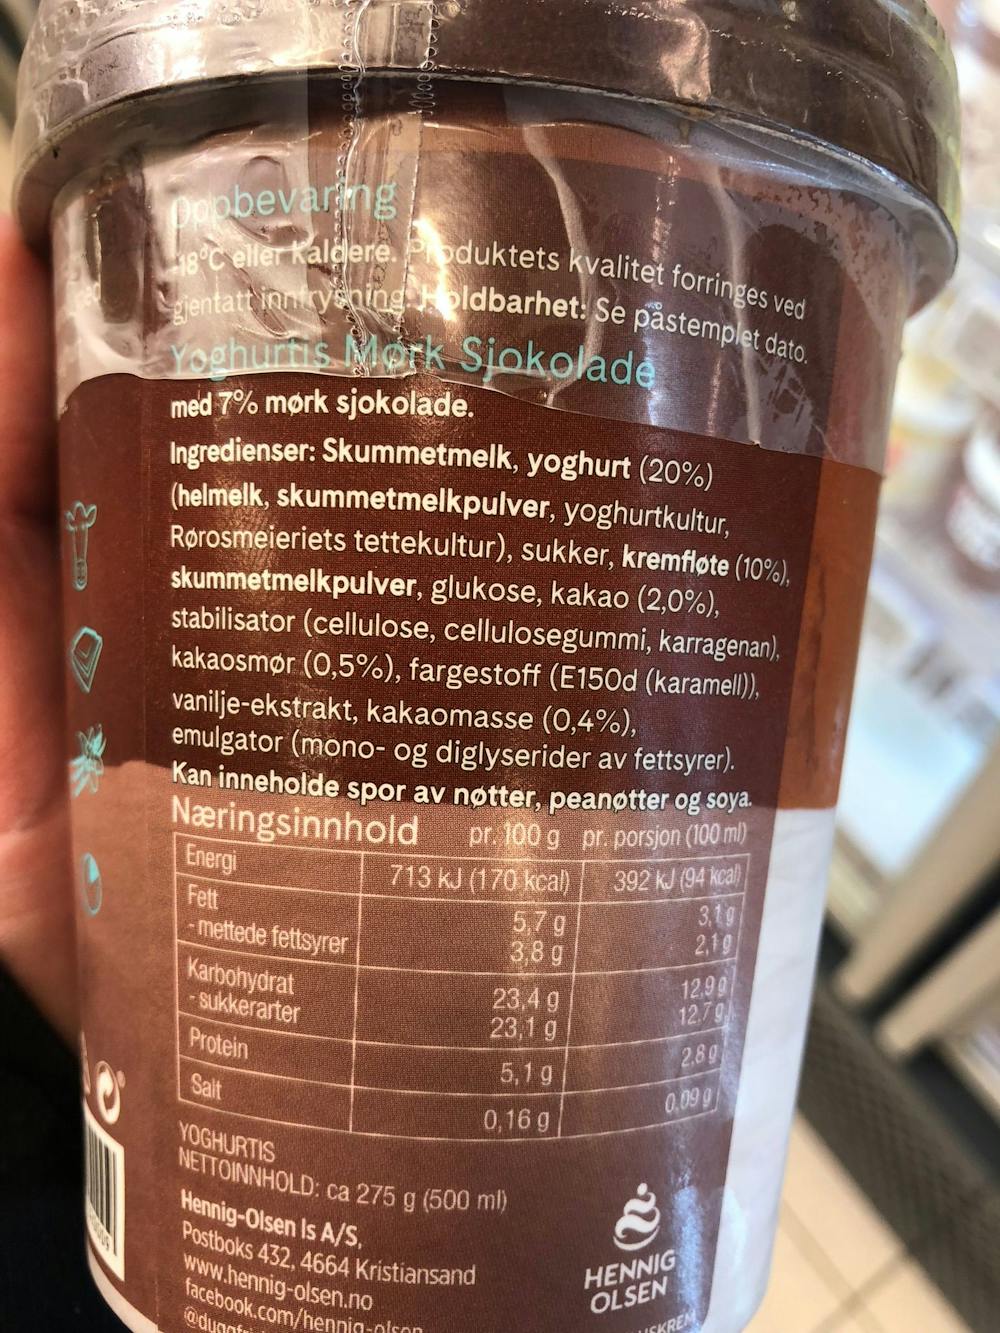 Ingredienslisten til Hennig Olsen Dugg yoghurtis mørk sjokolade